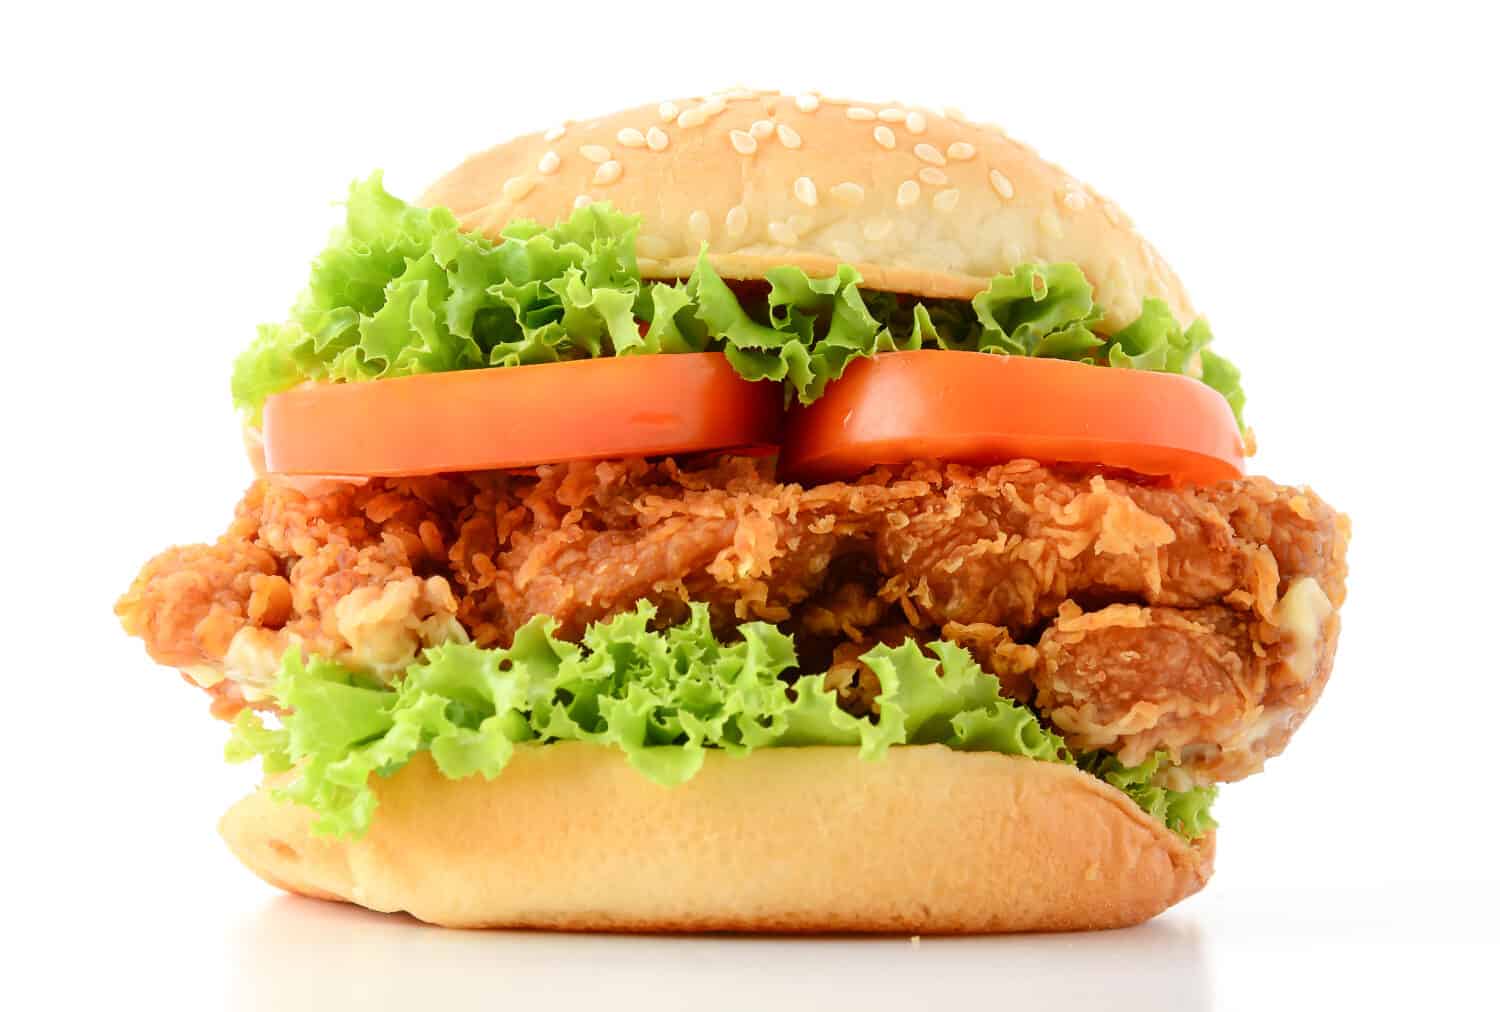 crispy chicken burger on white background